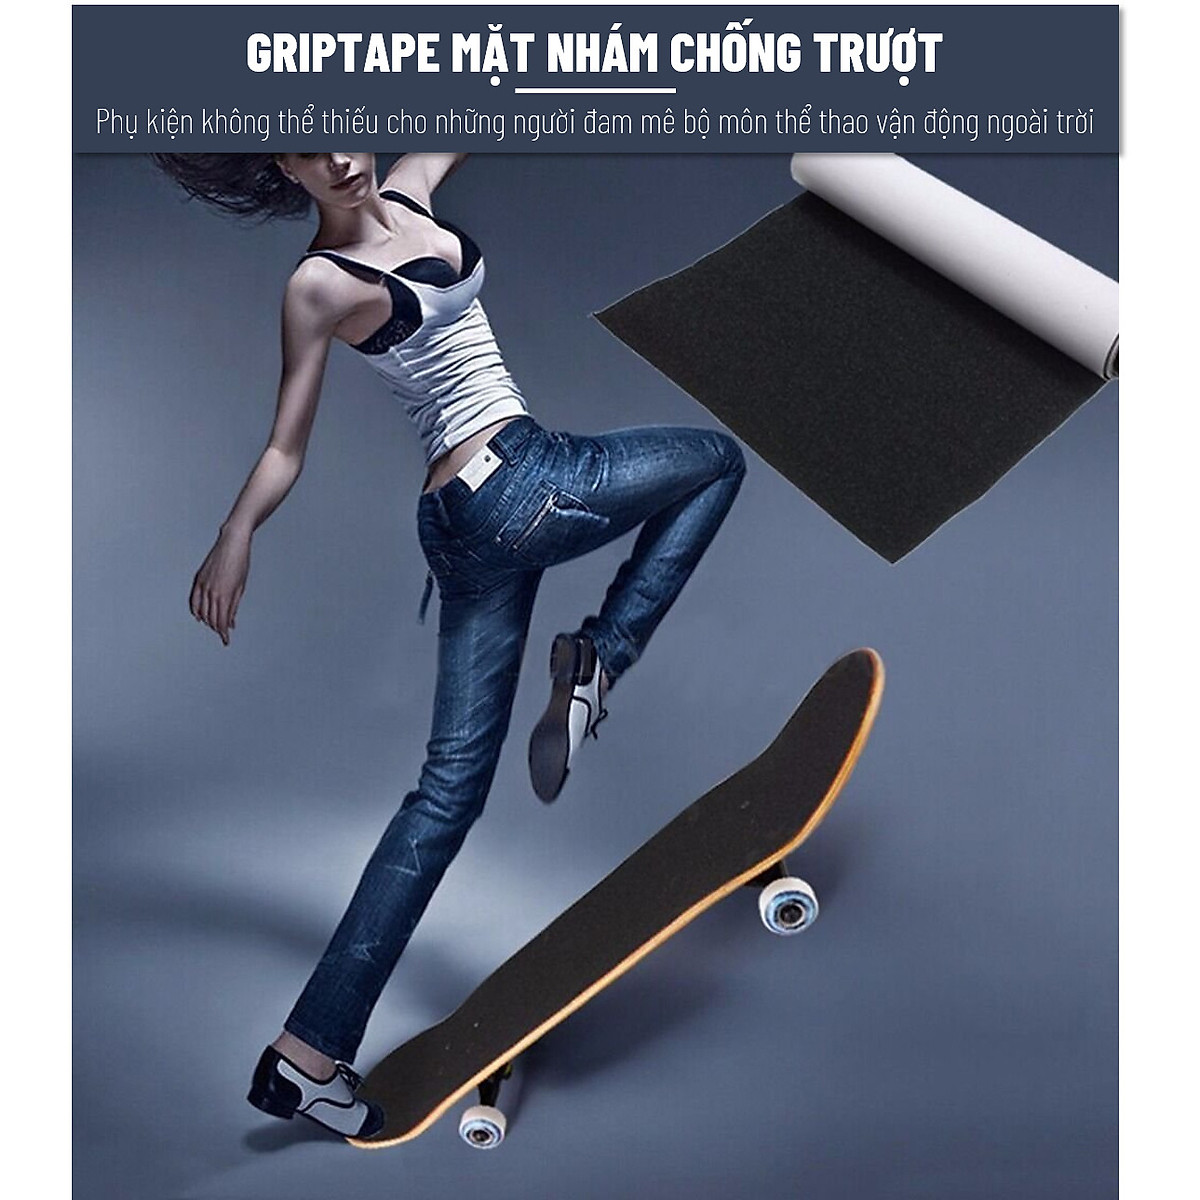 Mua Mặt Nhám , Grip tape, Chống Trượt cho Ván Trượt Skateboard và Scooter -  Miếng Dính Bề Mặt Tiện Ích - Loại 80 cm - Đảm Bảo An Toàn Trong Gia